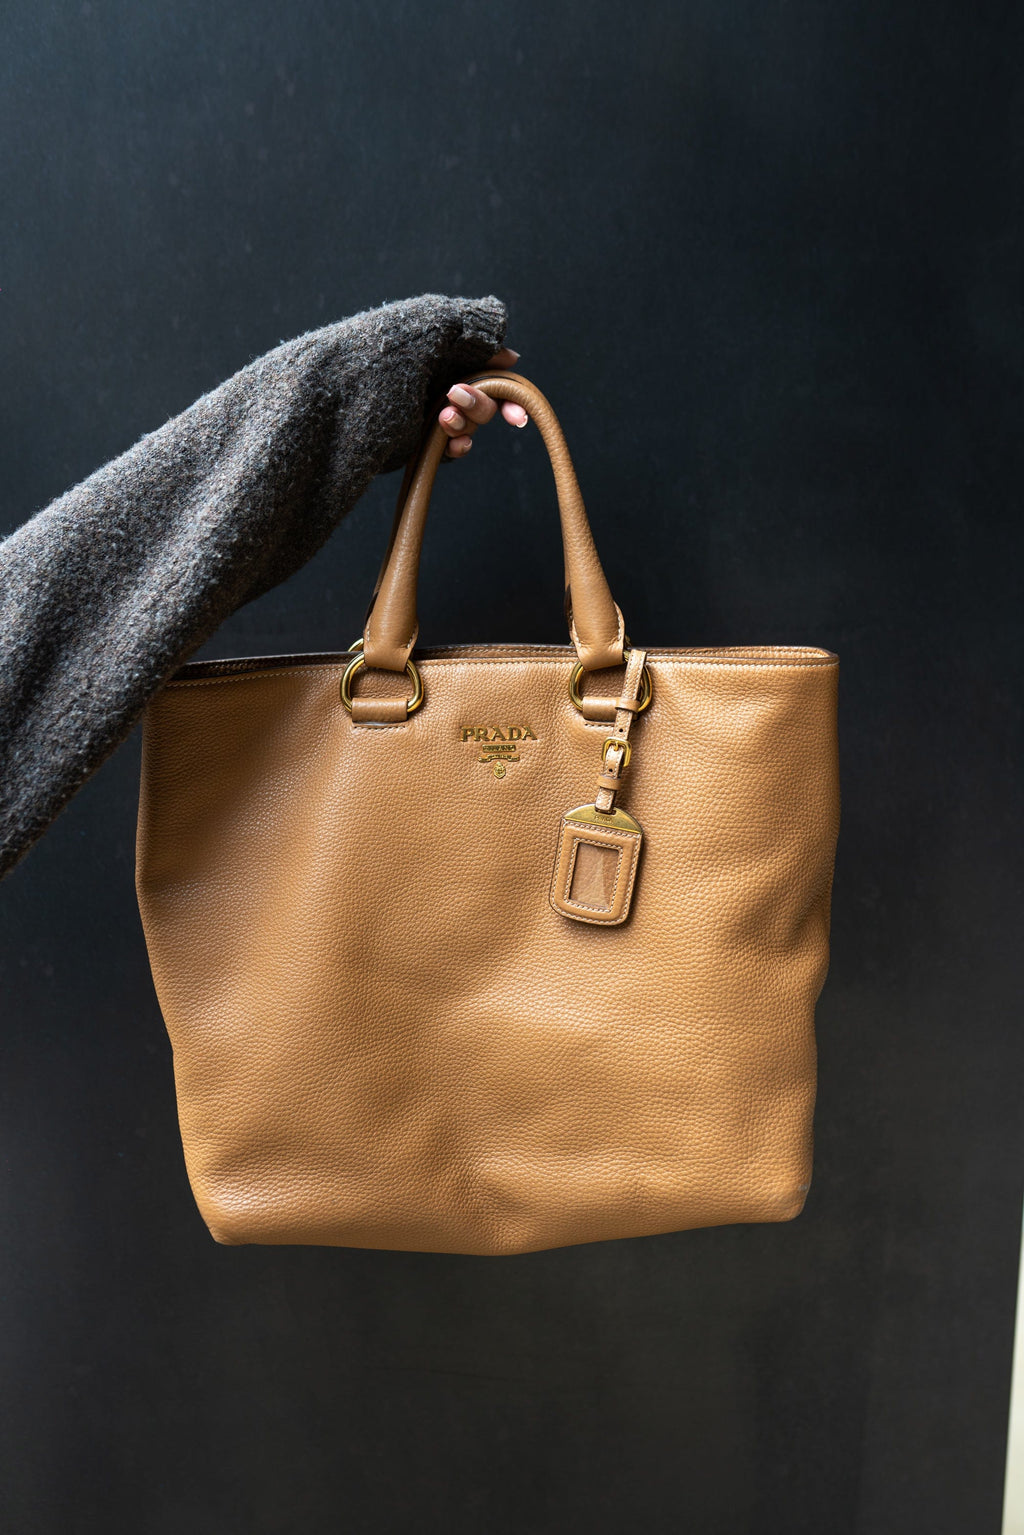 Authentic Prada saffiano tote bag purse Orange lux… - Gem